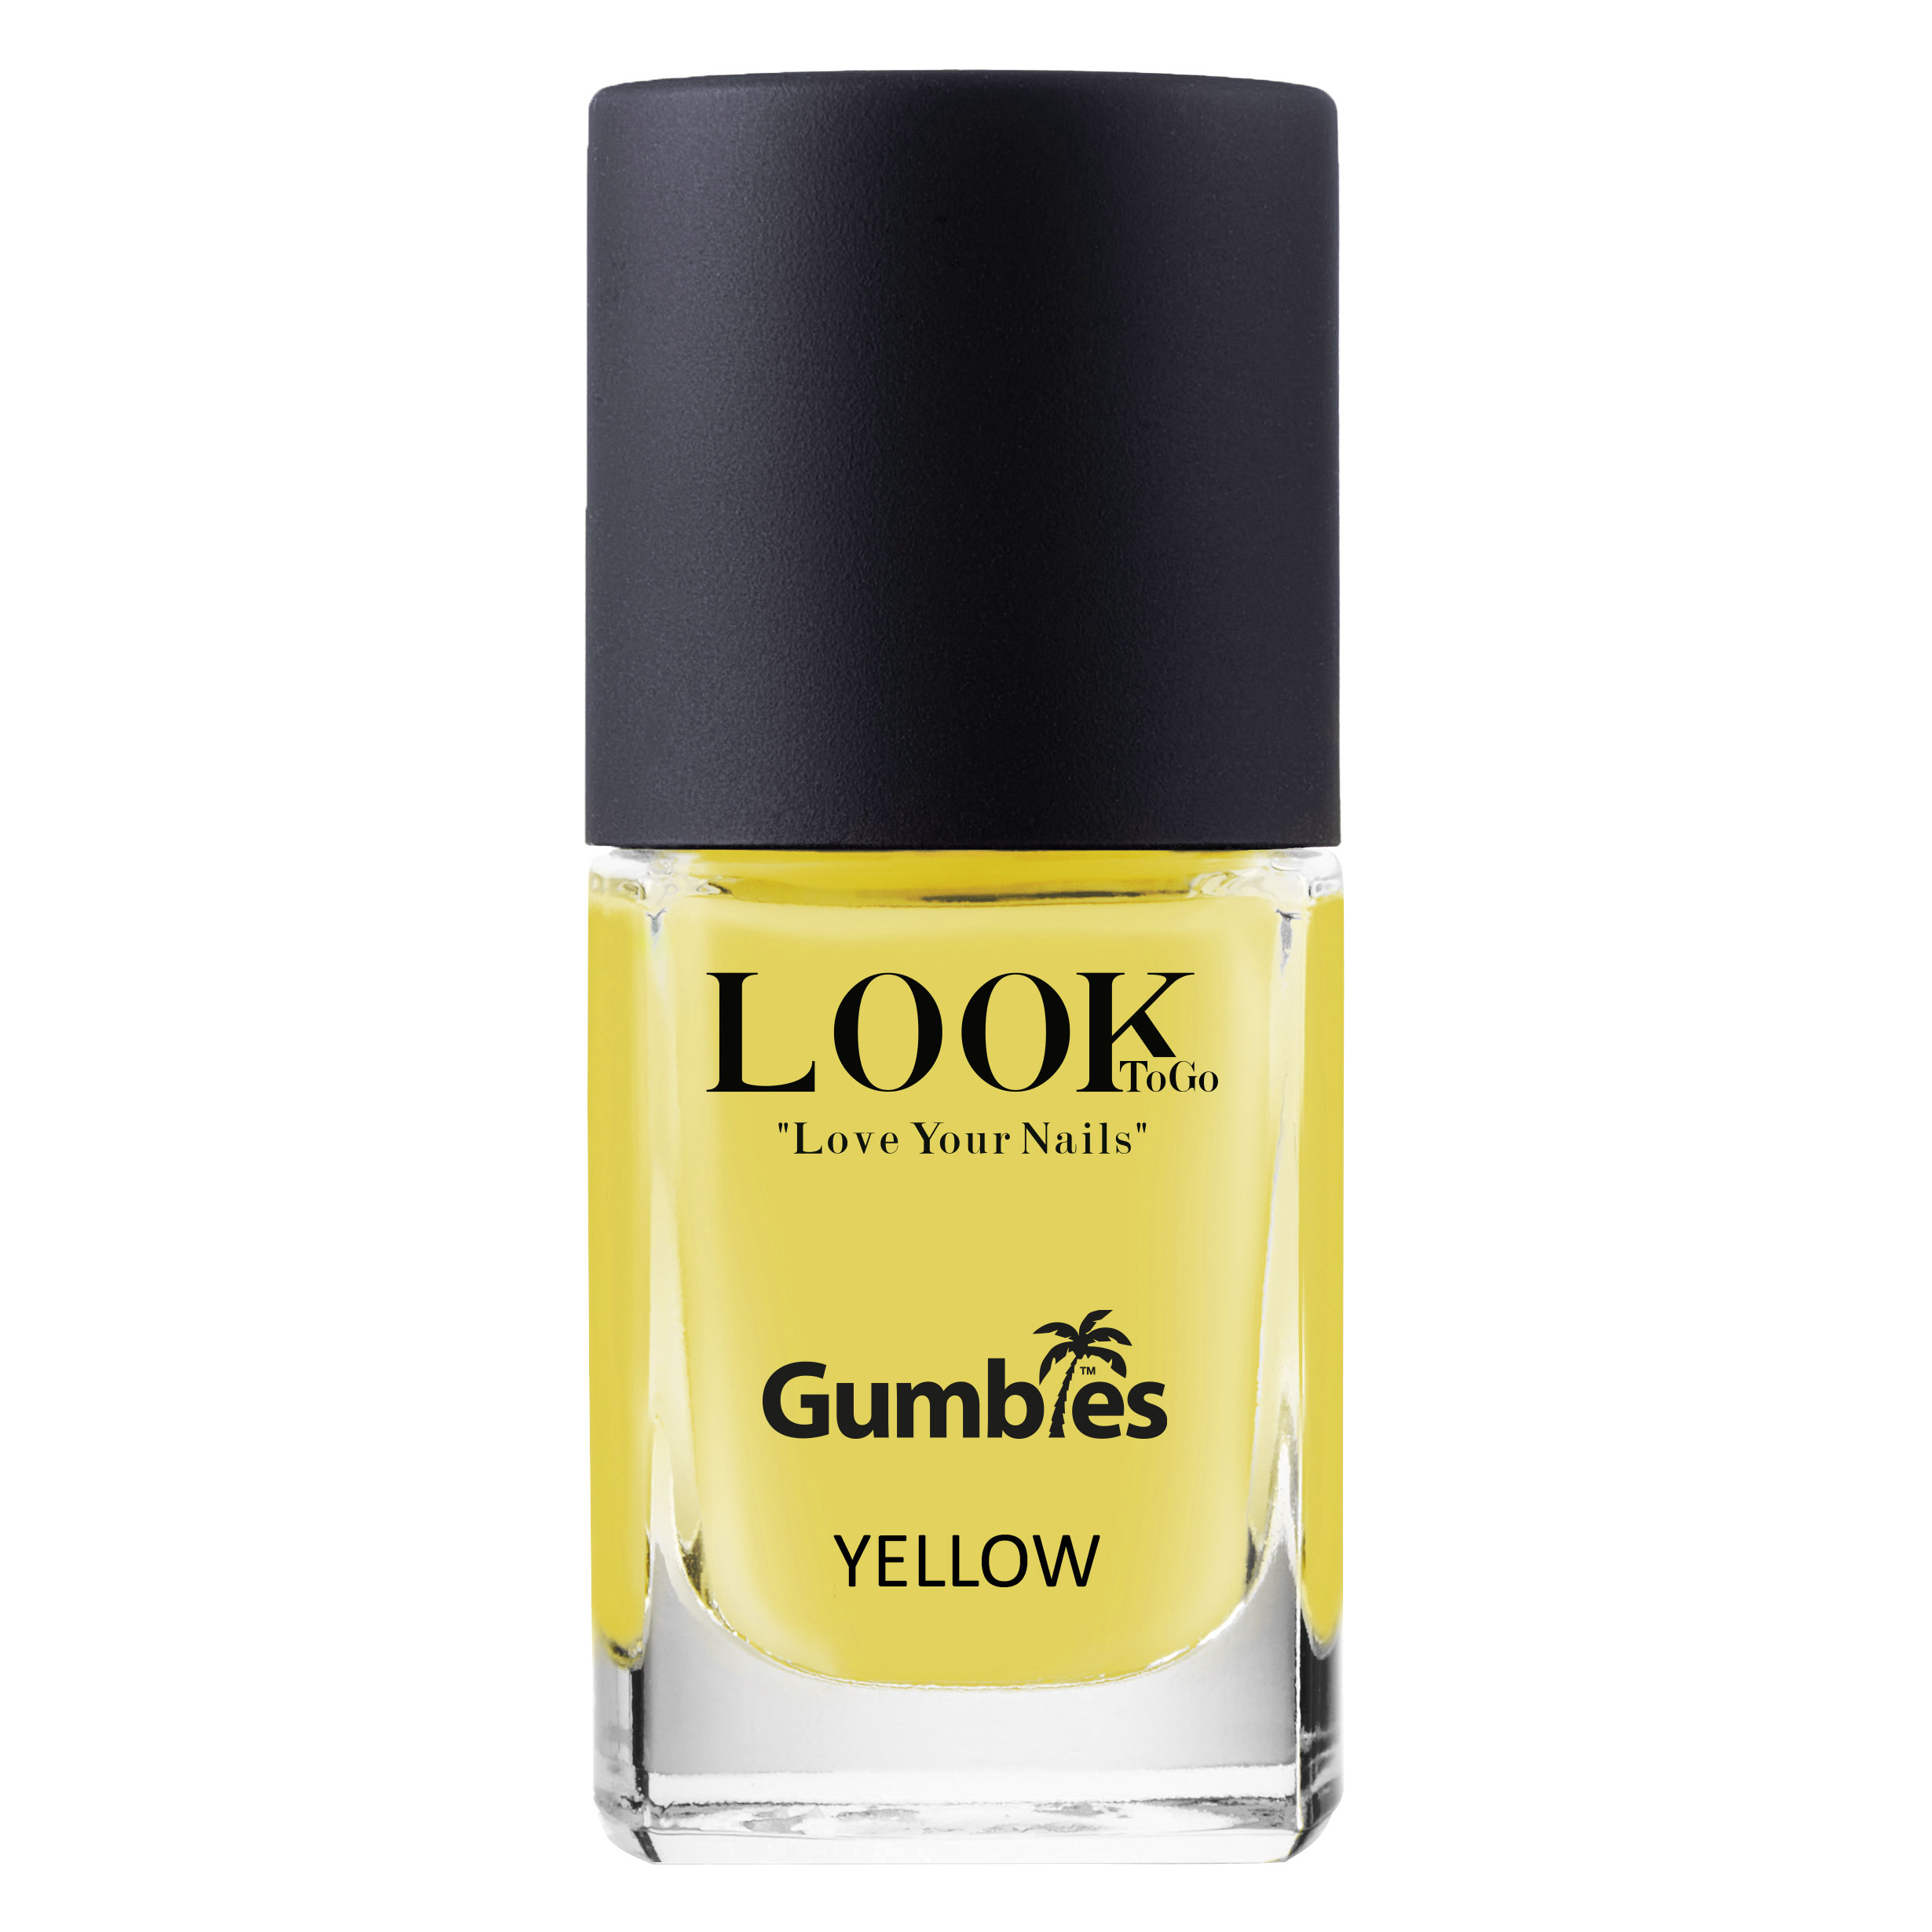 Nagellak "GUMBIES Yellow" van Look-To-Go